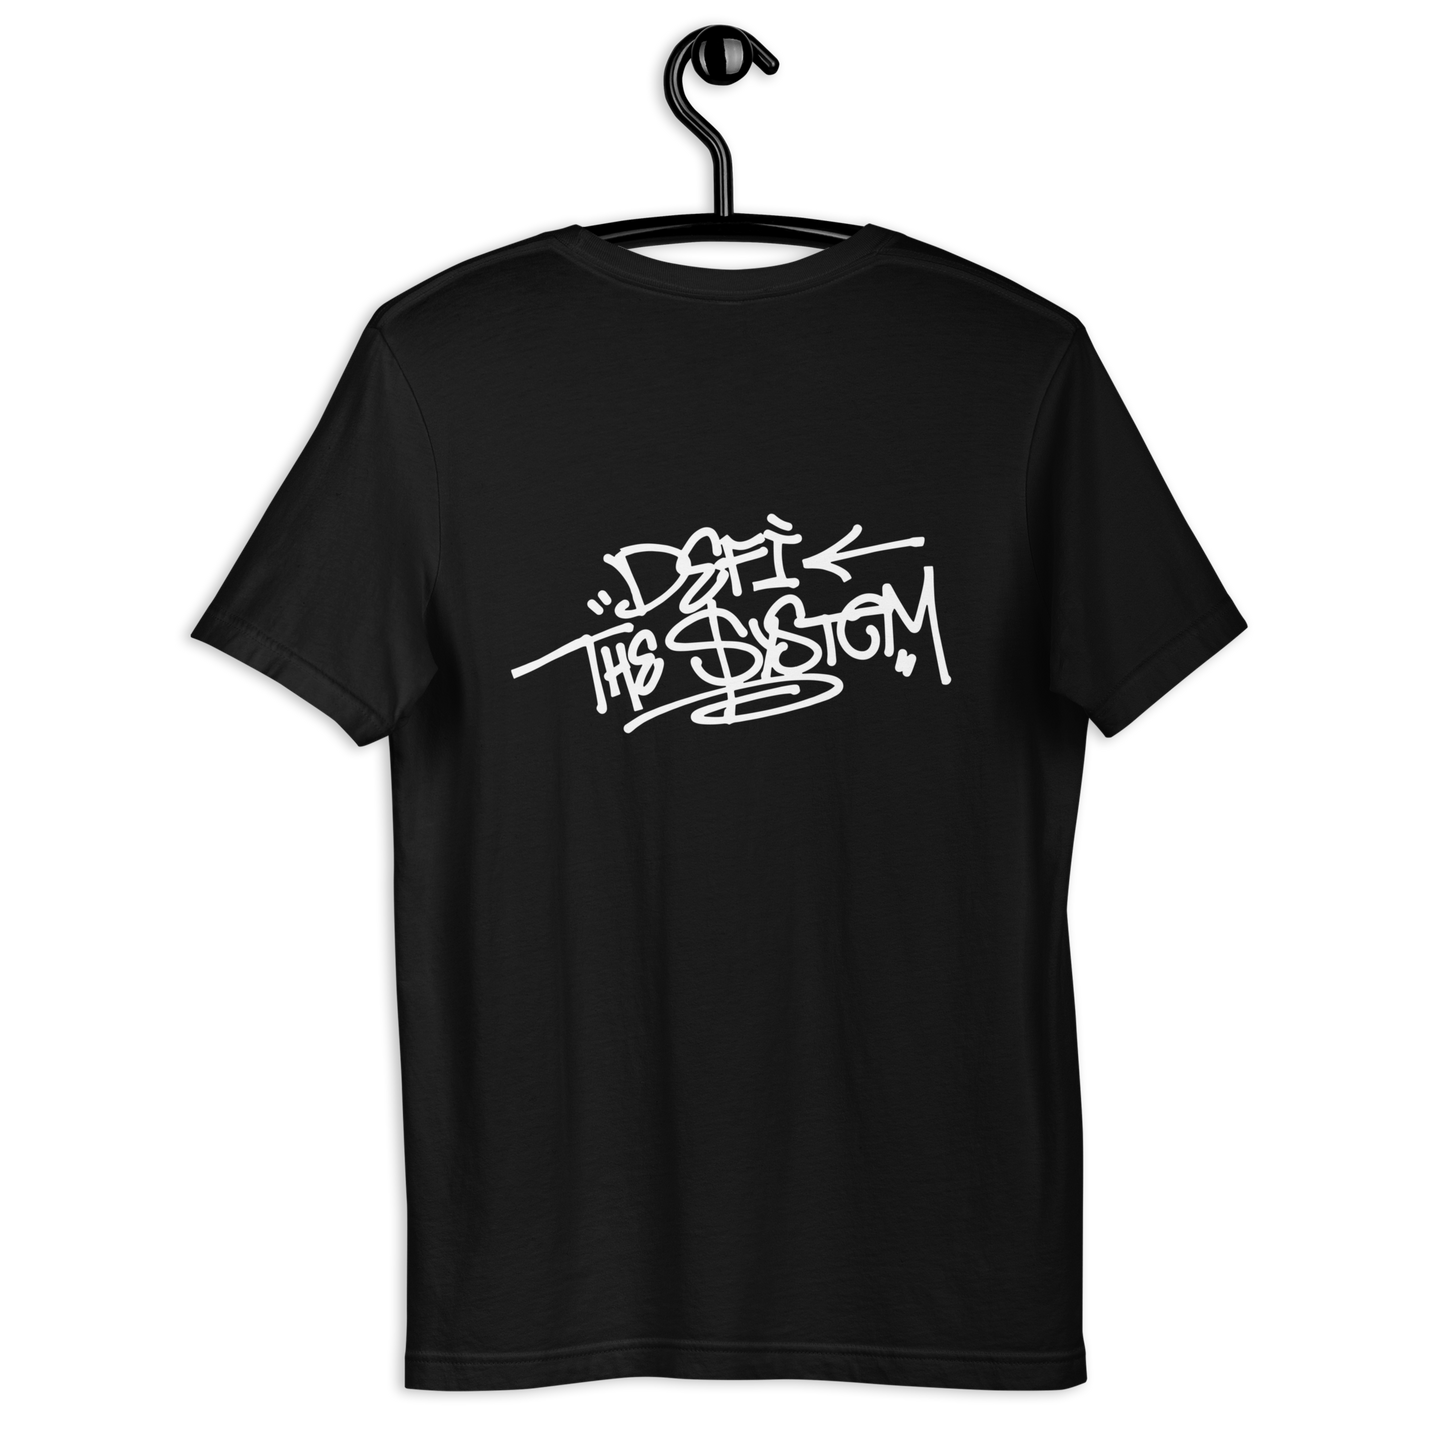 Defi the system! 'Graffiti' shirt v2